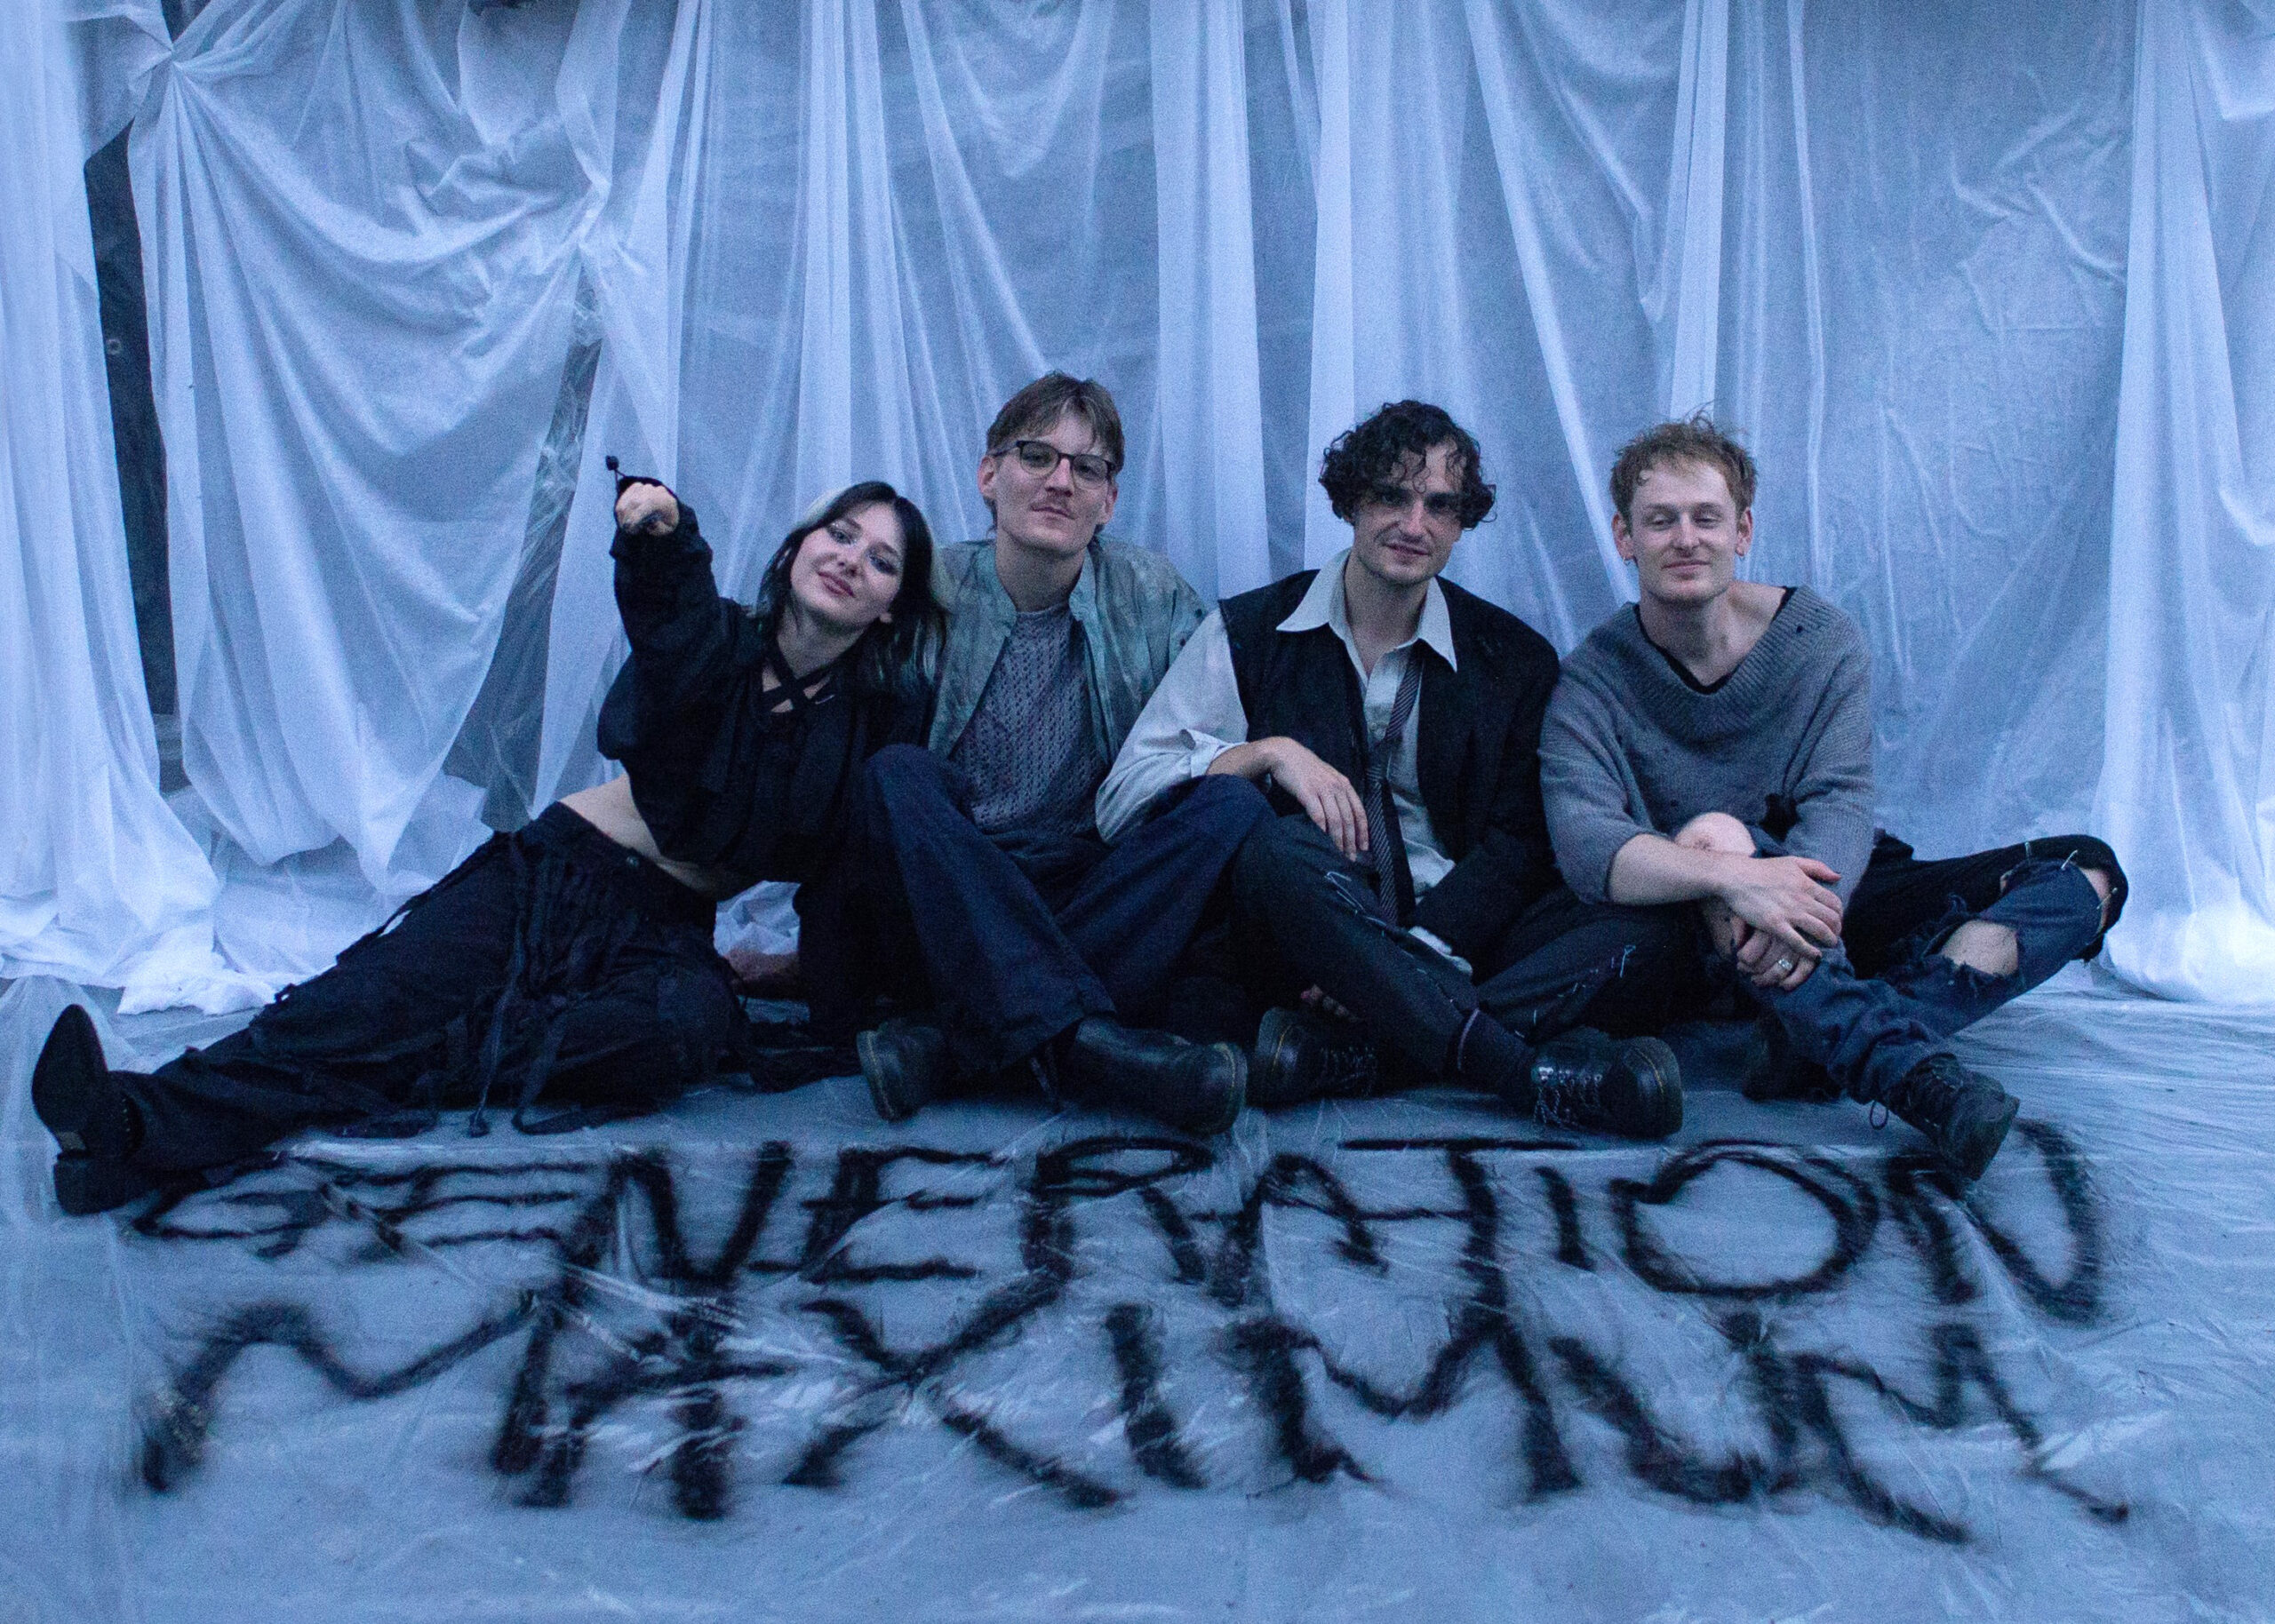 Die Sängerin und die Musiker sitzen auf dem Boden, auf den mit schwarzer Farbe "Generation Maximum" gesprüht wurde.